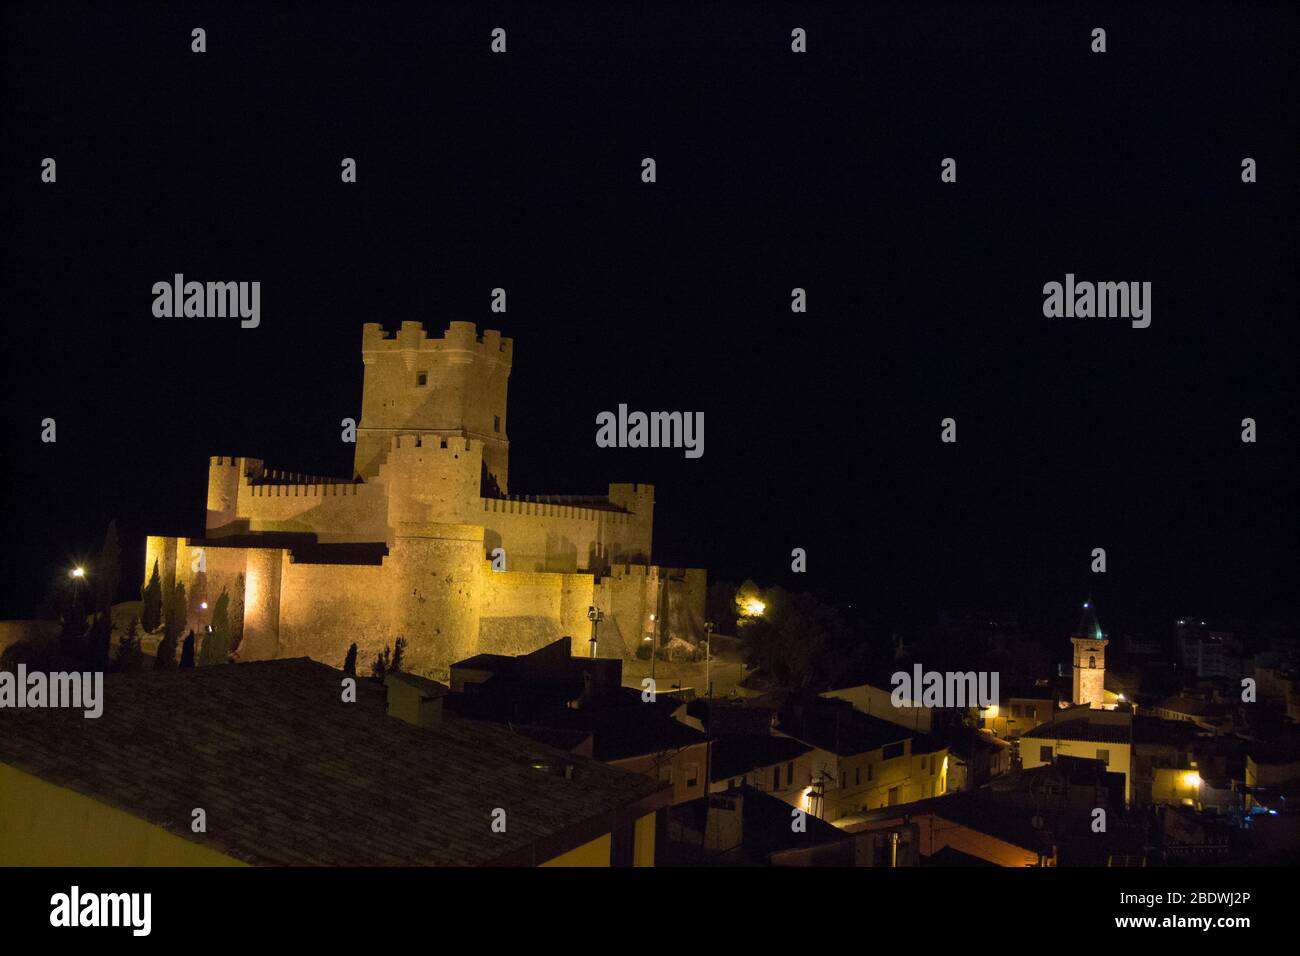 Castello medievale illuminato sopra l'antica città di notte. Castello di Atalaya, Villena, Spagna. Foto Stock